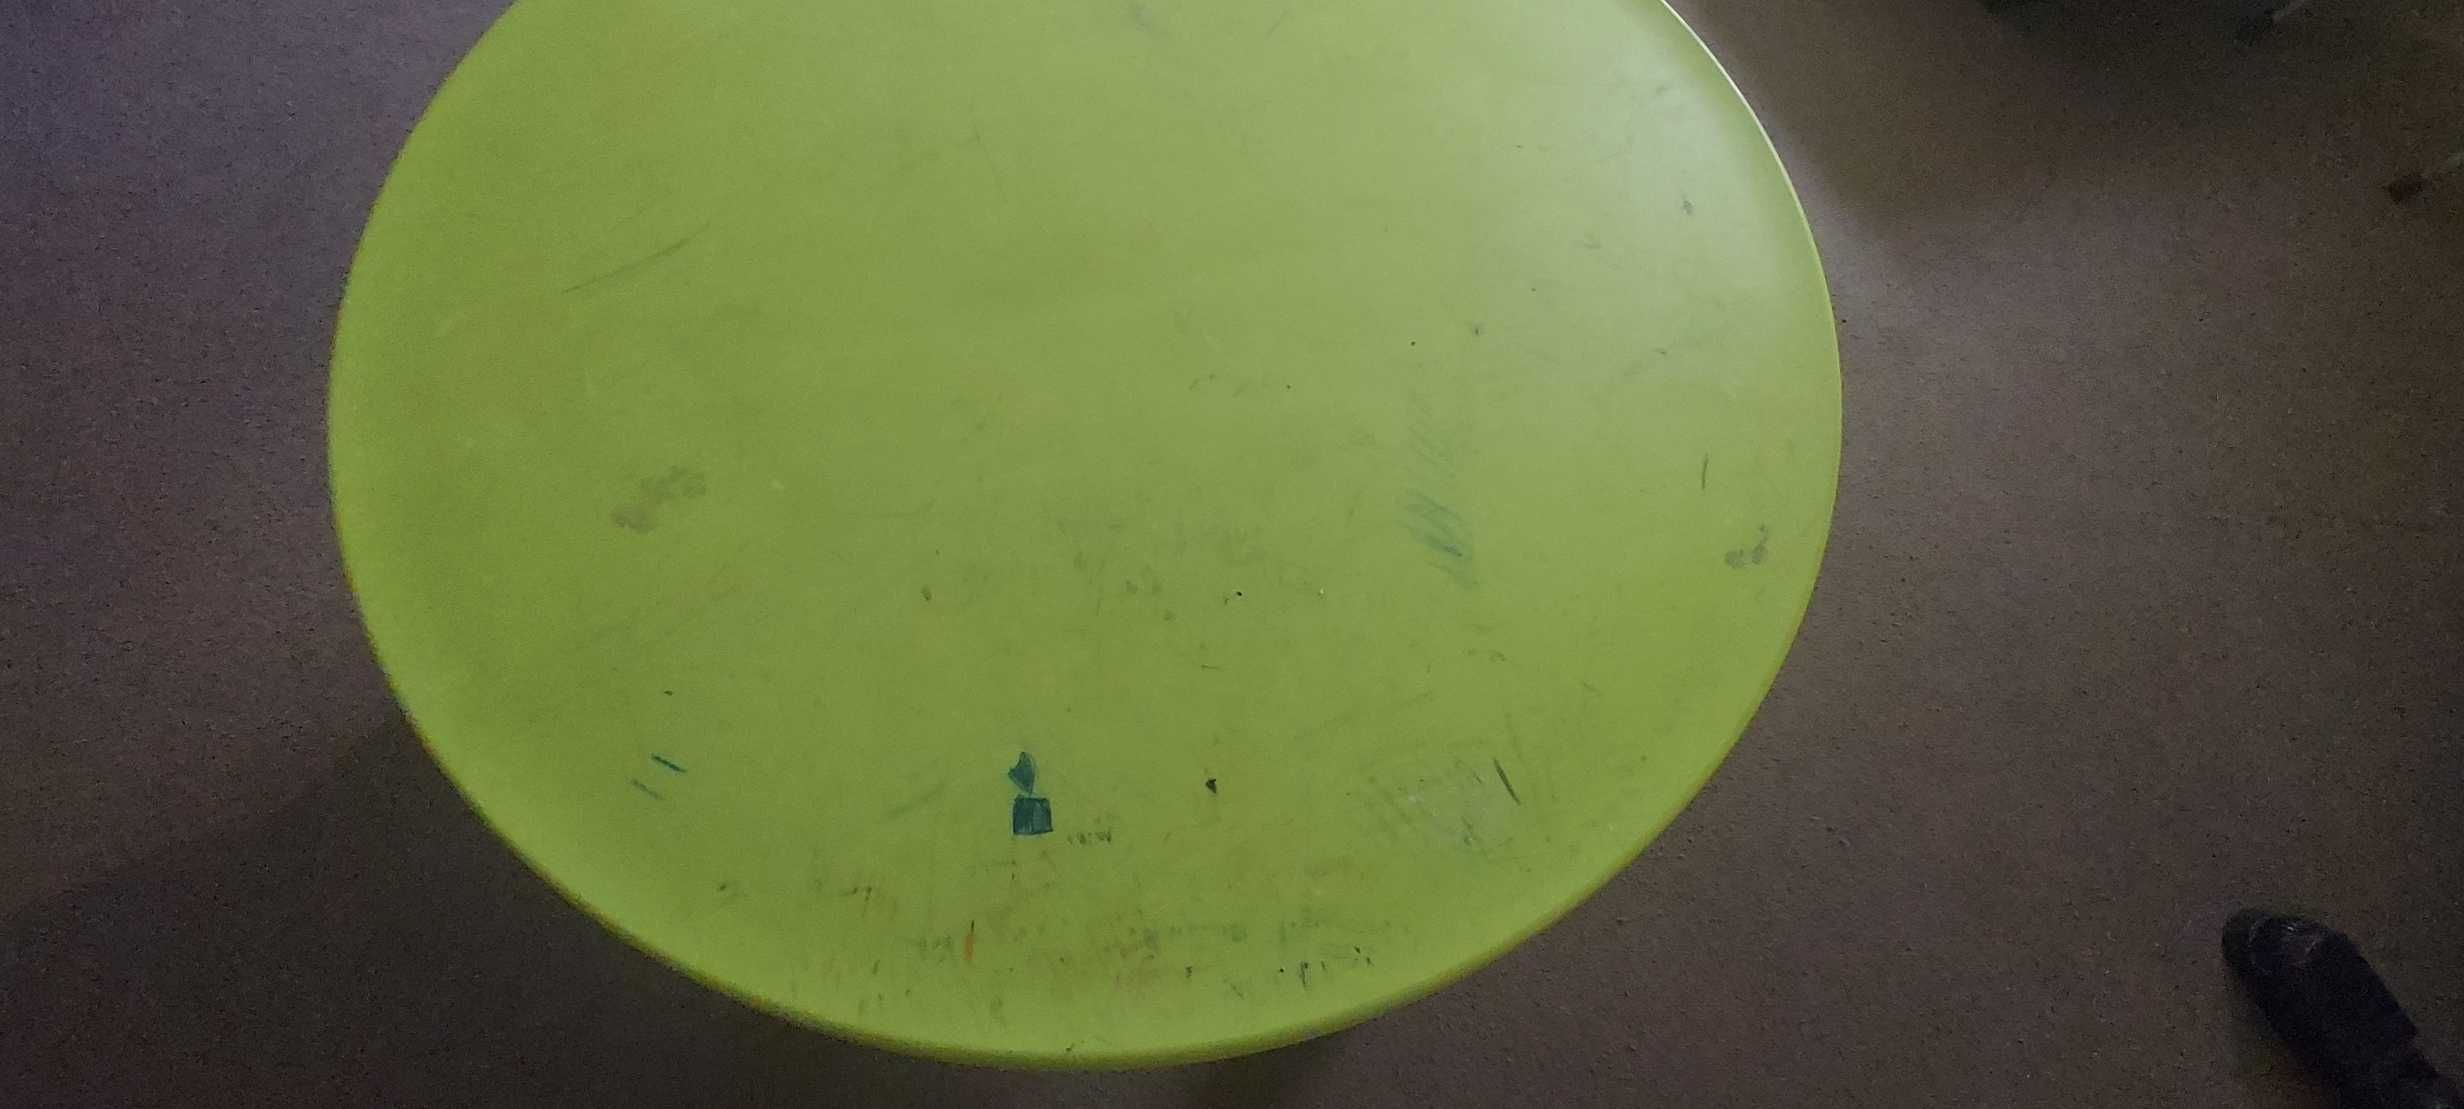 MAMMUT stolik dziecięcy śr. 85 cm  IKEA